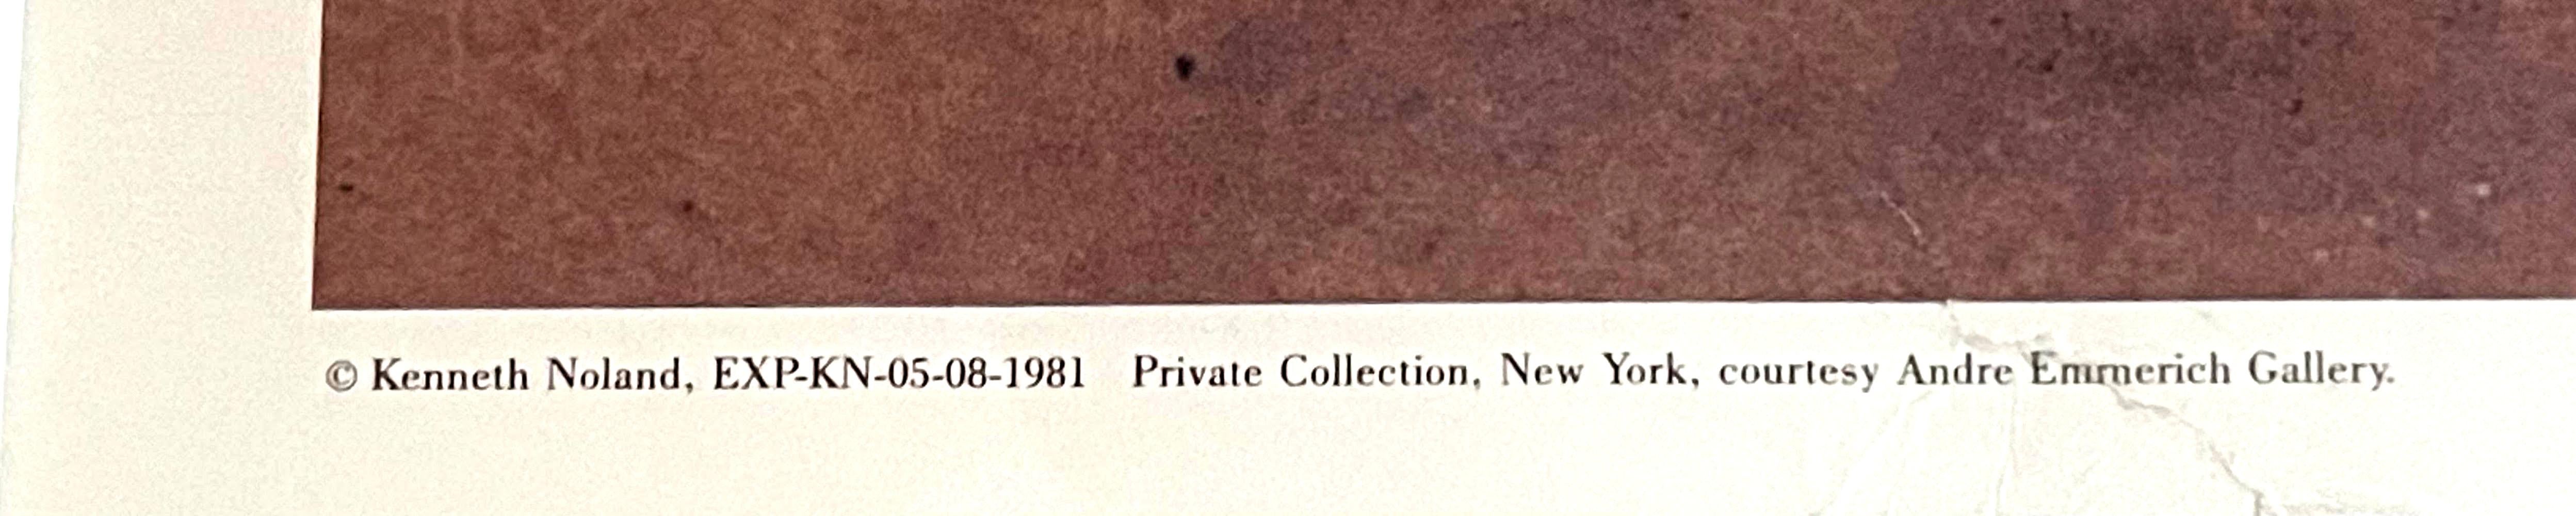 Kenneth Noland
Gravure du festival d'Ojai (édition limitée signée de luxe), 1986
Lithographie offset
Signée à la main et numérotée 6/100 par Kenneth Noland sur la partie inférieure du recto.
Cadre inclus :  encadré dans un cadre en bois blanc de